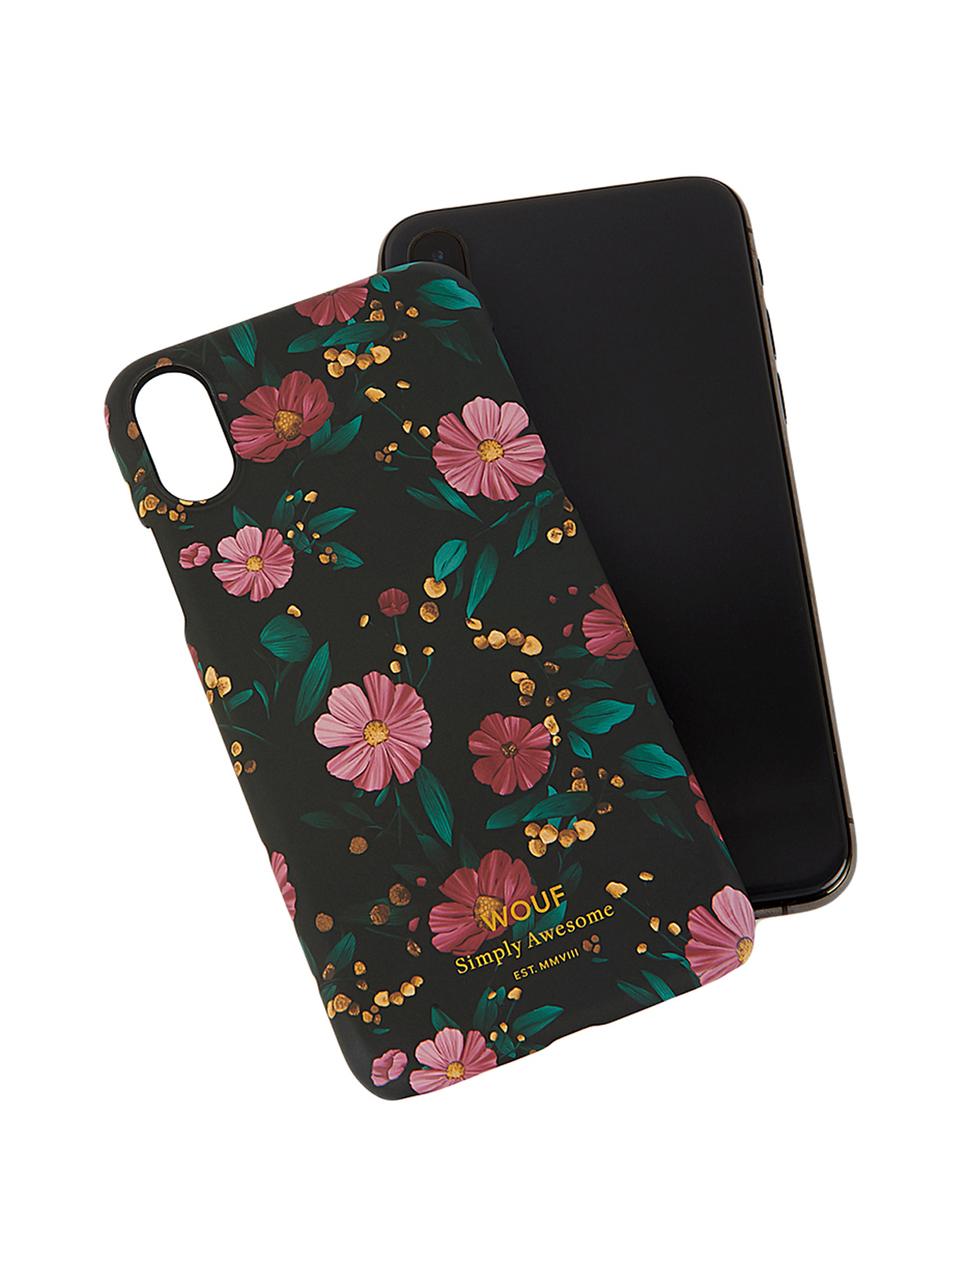 Coque Black Flowers pour iPhone X, Multicolore